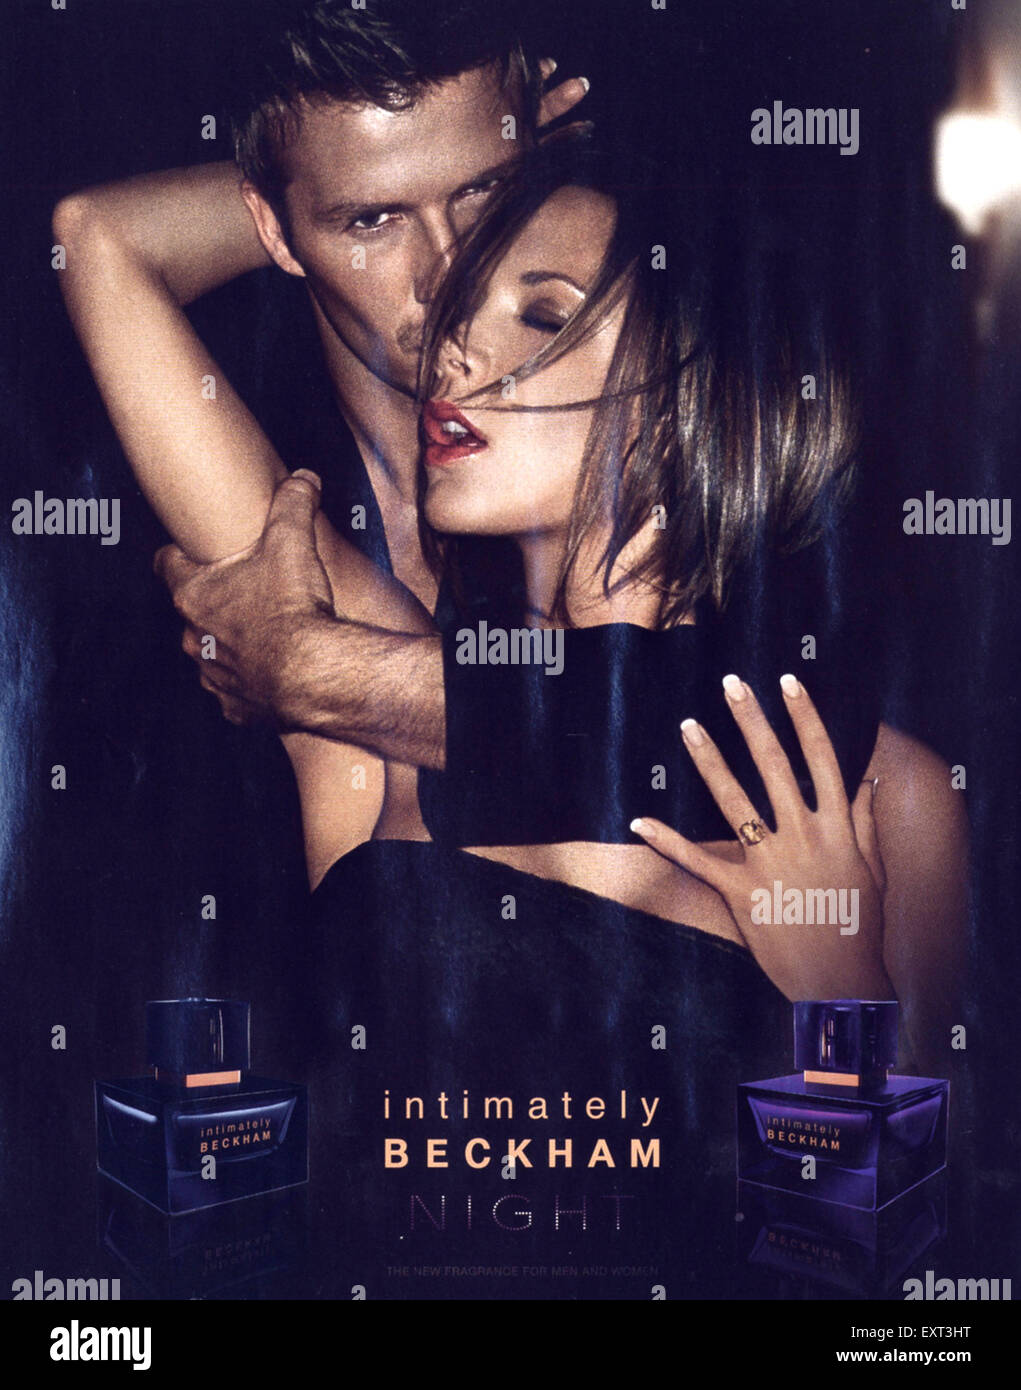 2000s UK Intimately Beckham Night Magazine Advert Stock Photo